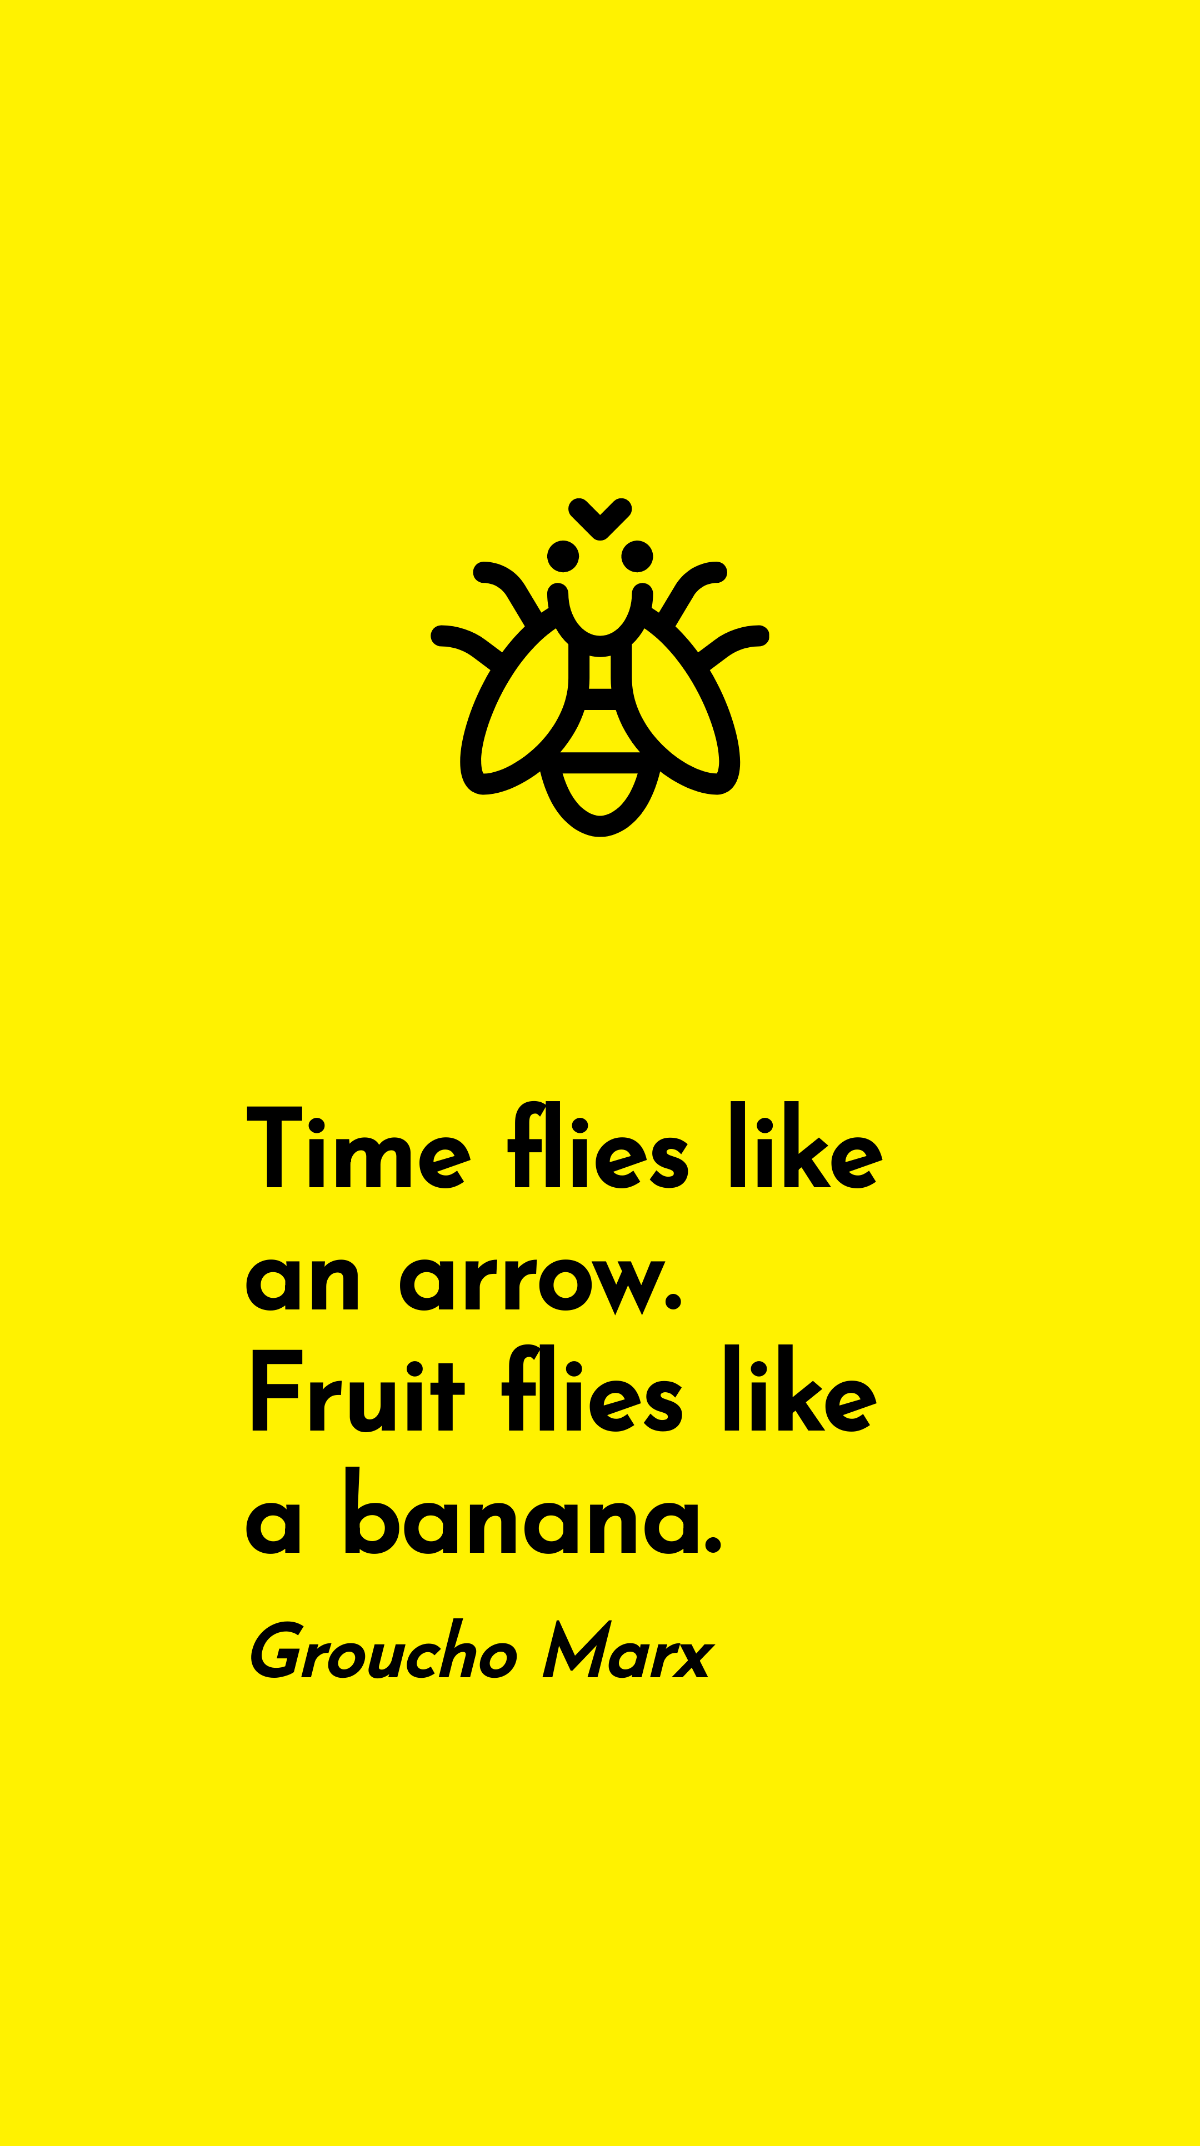 Groucho Marx - Time flies like an arrow. Fruit flies like a banana. Template